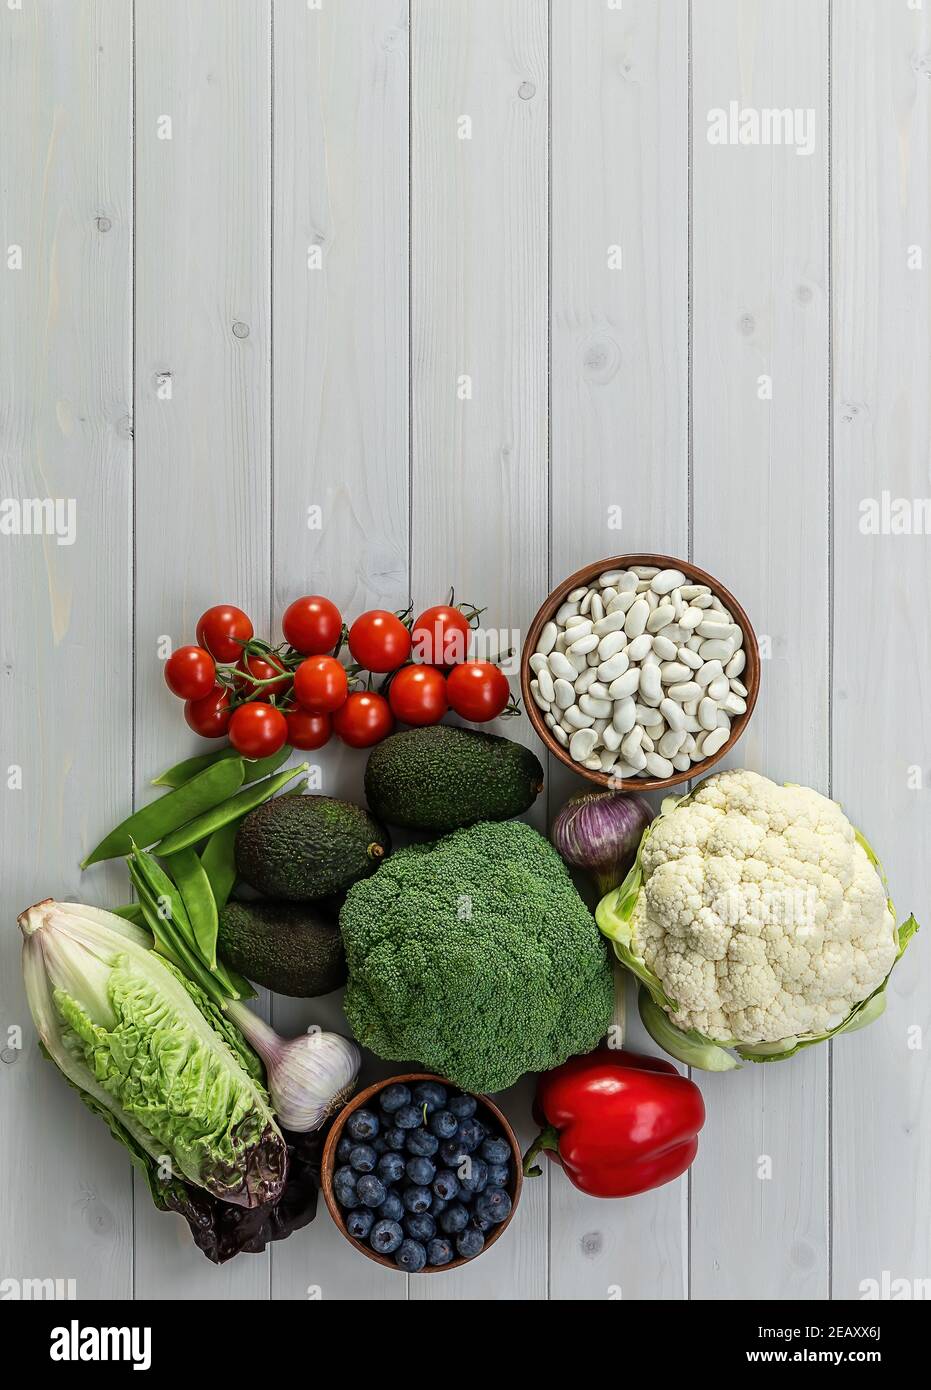 Fondo de alimentos saludables, productos de dieta a base de plantas de moda - verduras frescas crudas, bayas, y frijoles. Foto de stock